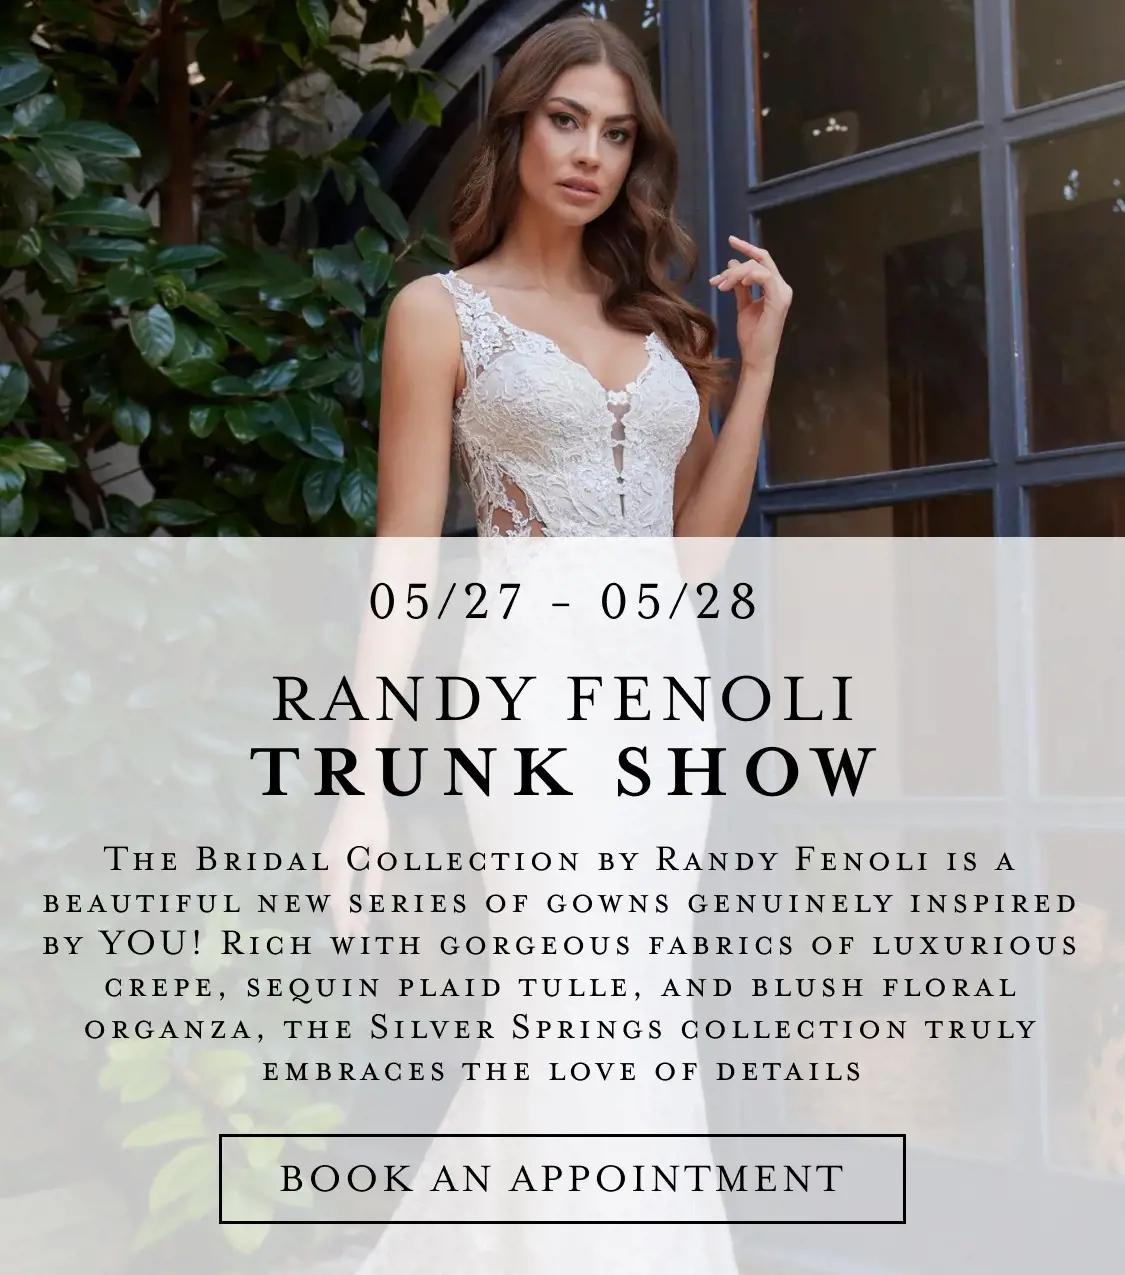 Randy Fenoli trunk show at Bella Bridal Gallery.